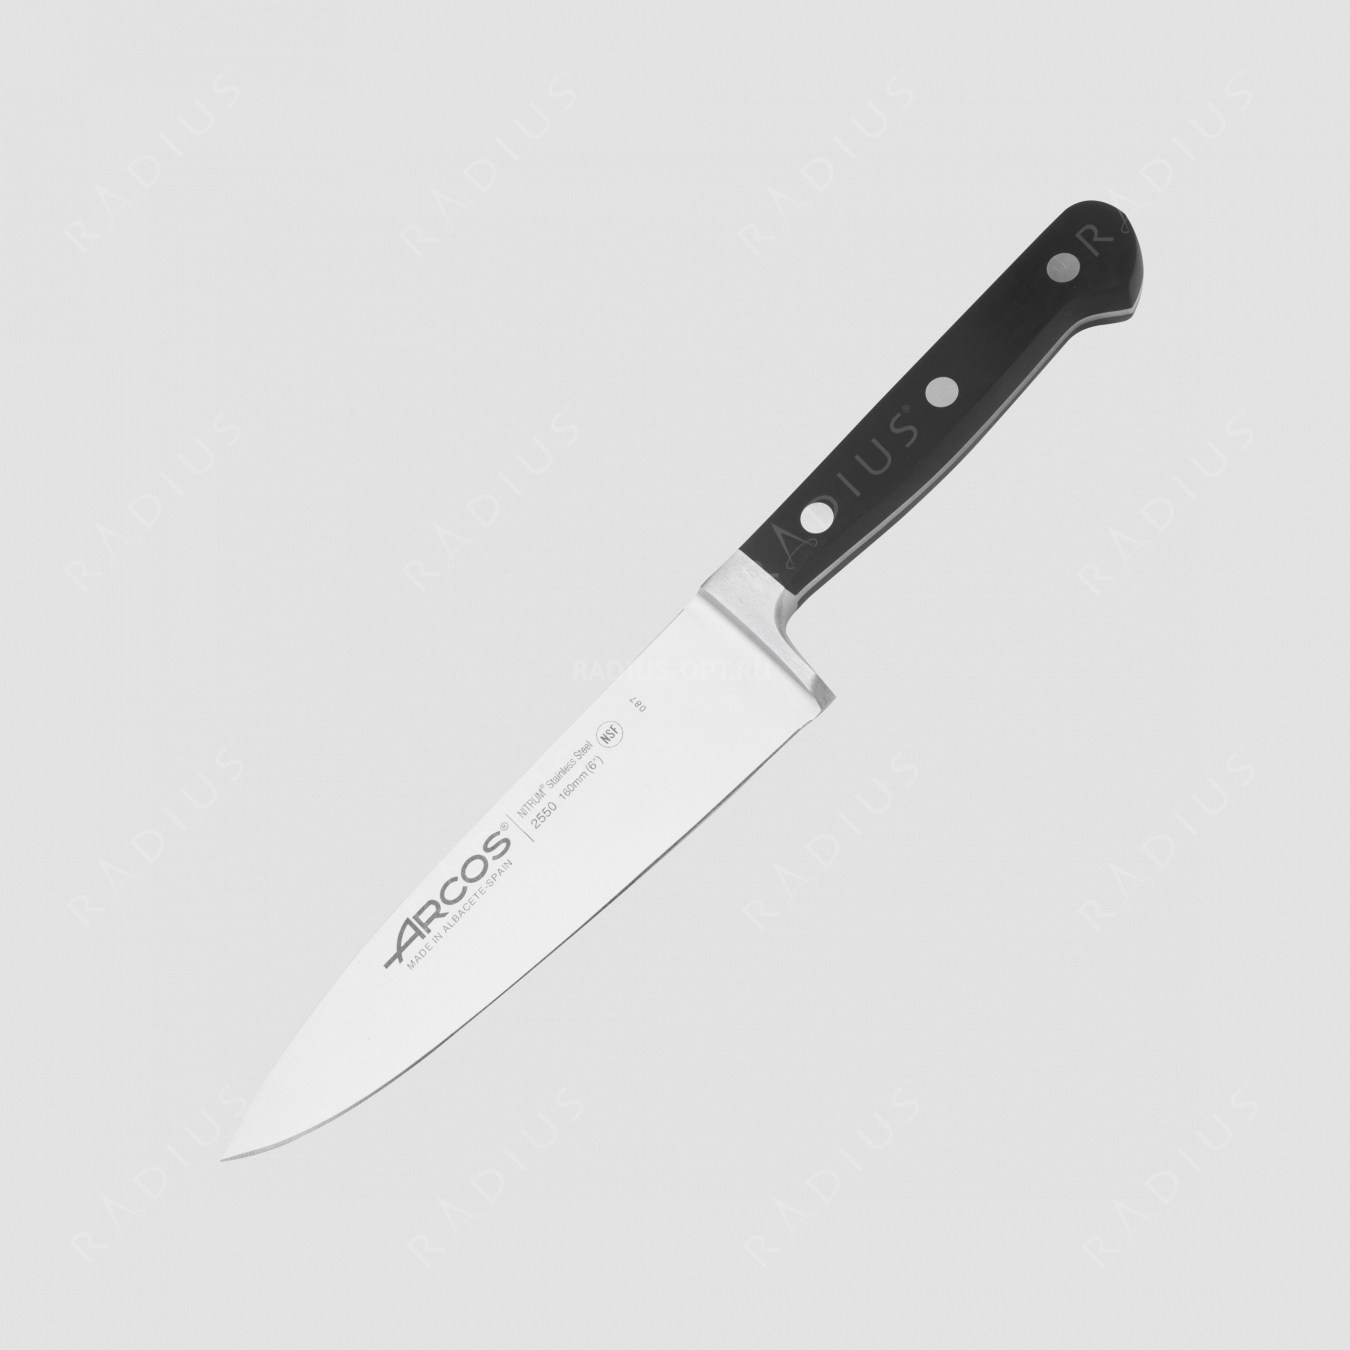 Профессиональный поварской кухонный нож 16 см, серия Clasica, ARCOS, Испания